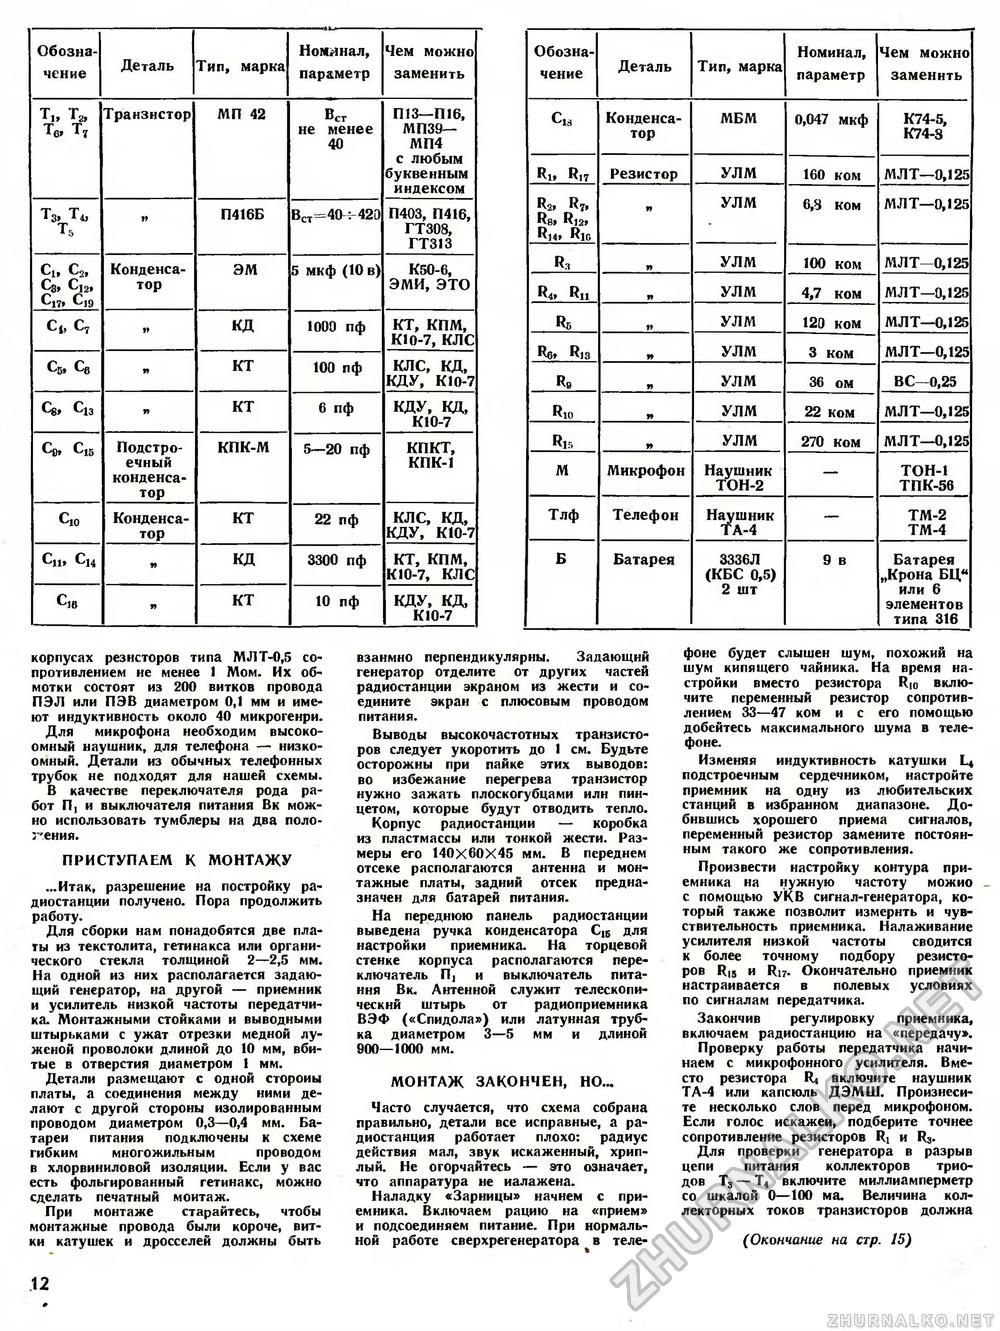 Юный техник - для умелых рук 1972-05, страница 12